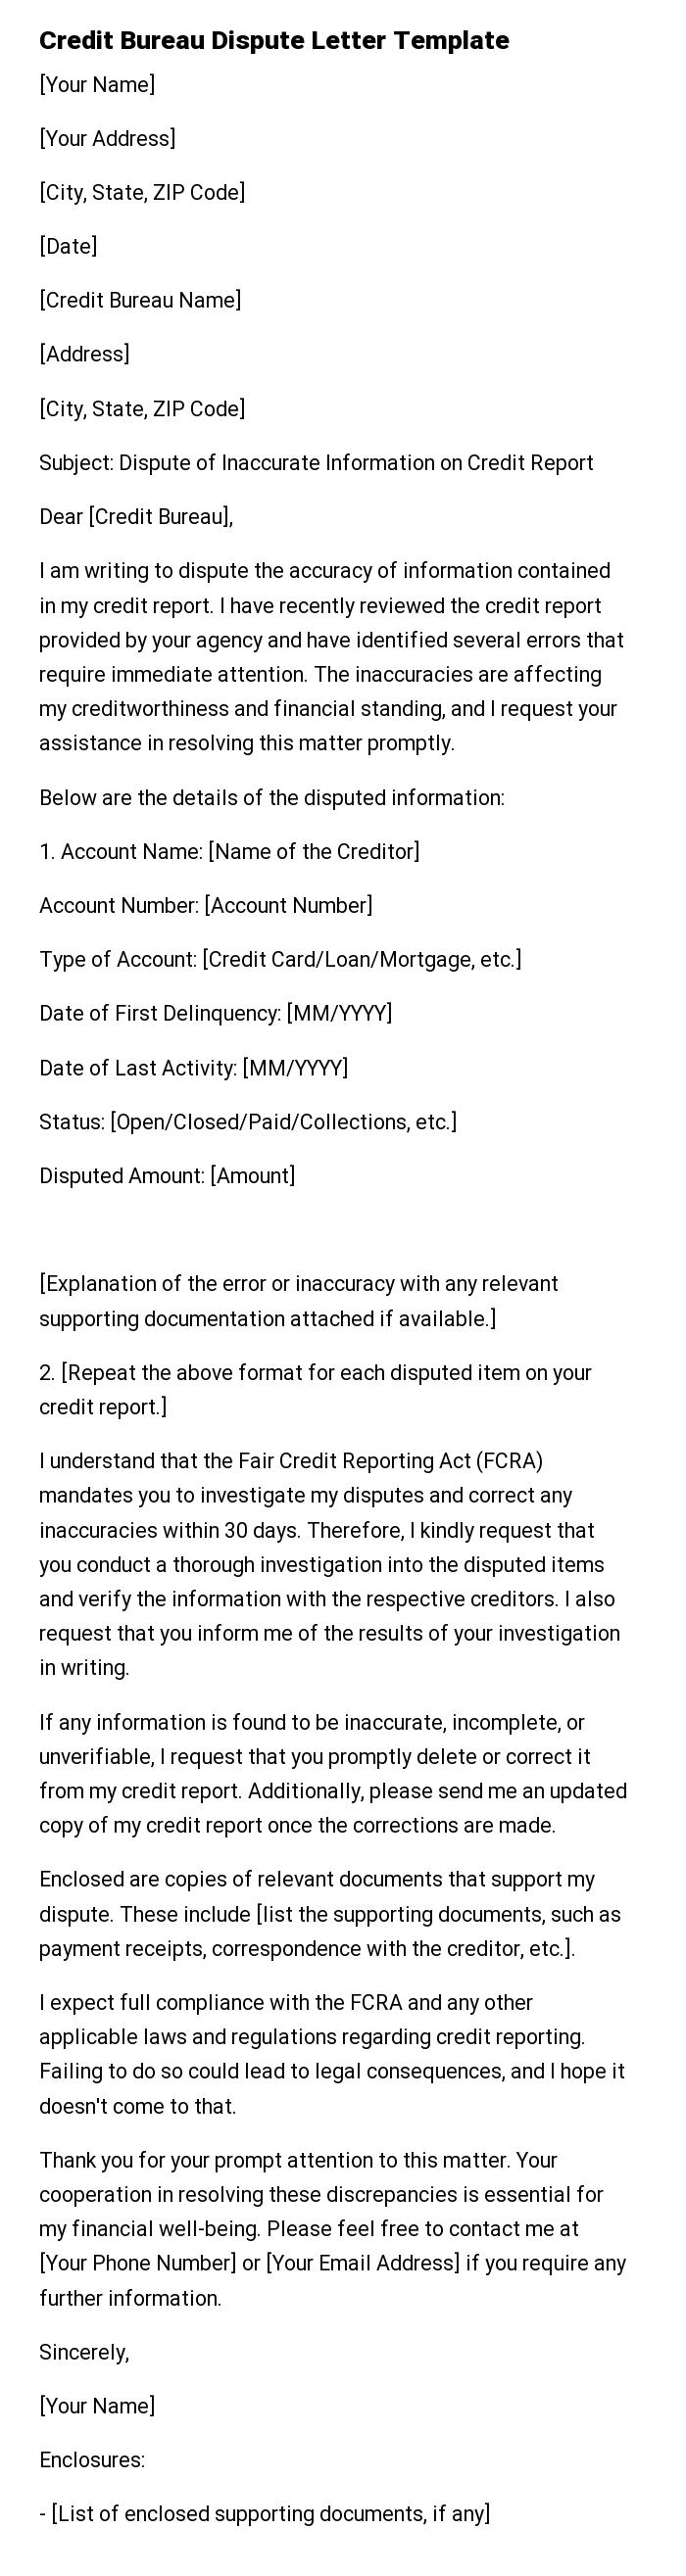 Credit Bureau Dispute Letter Template